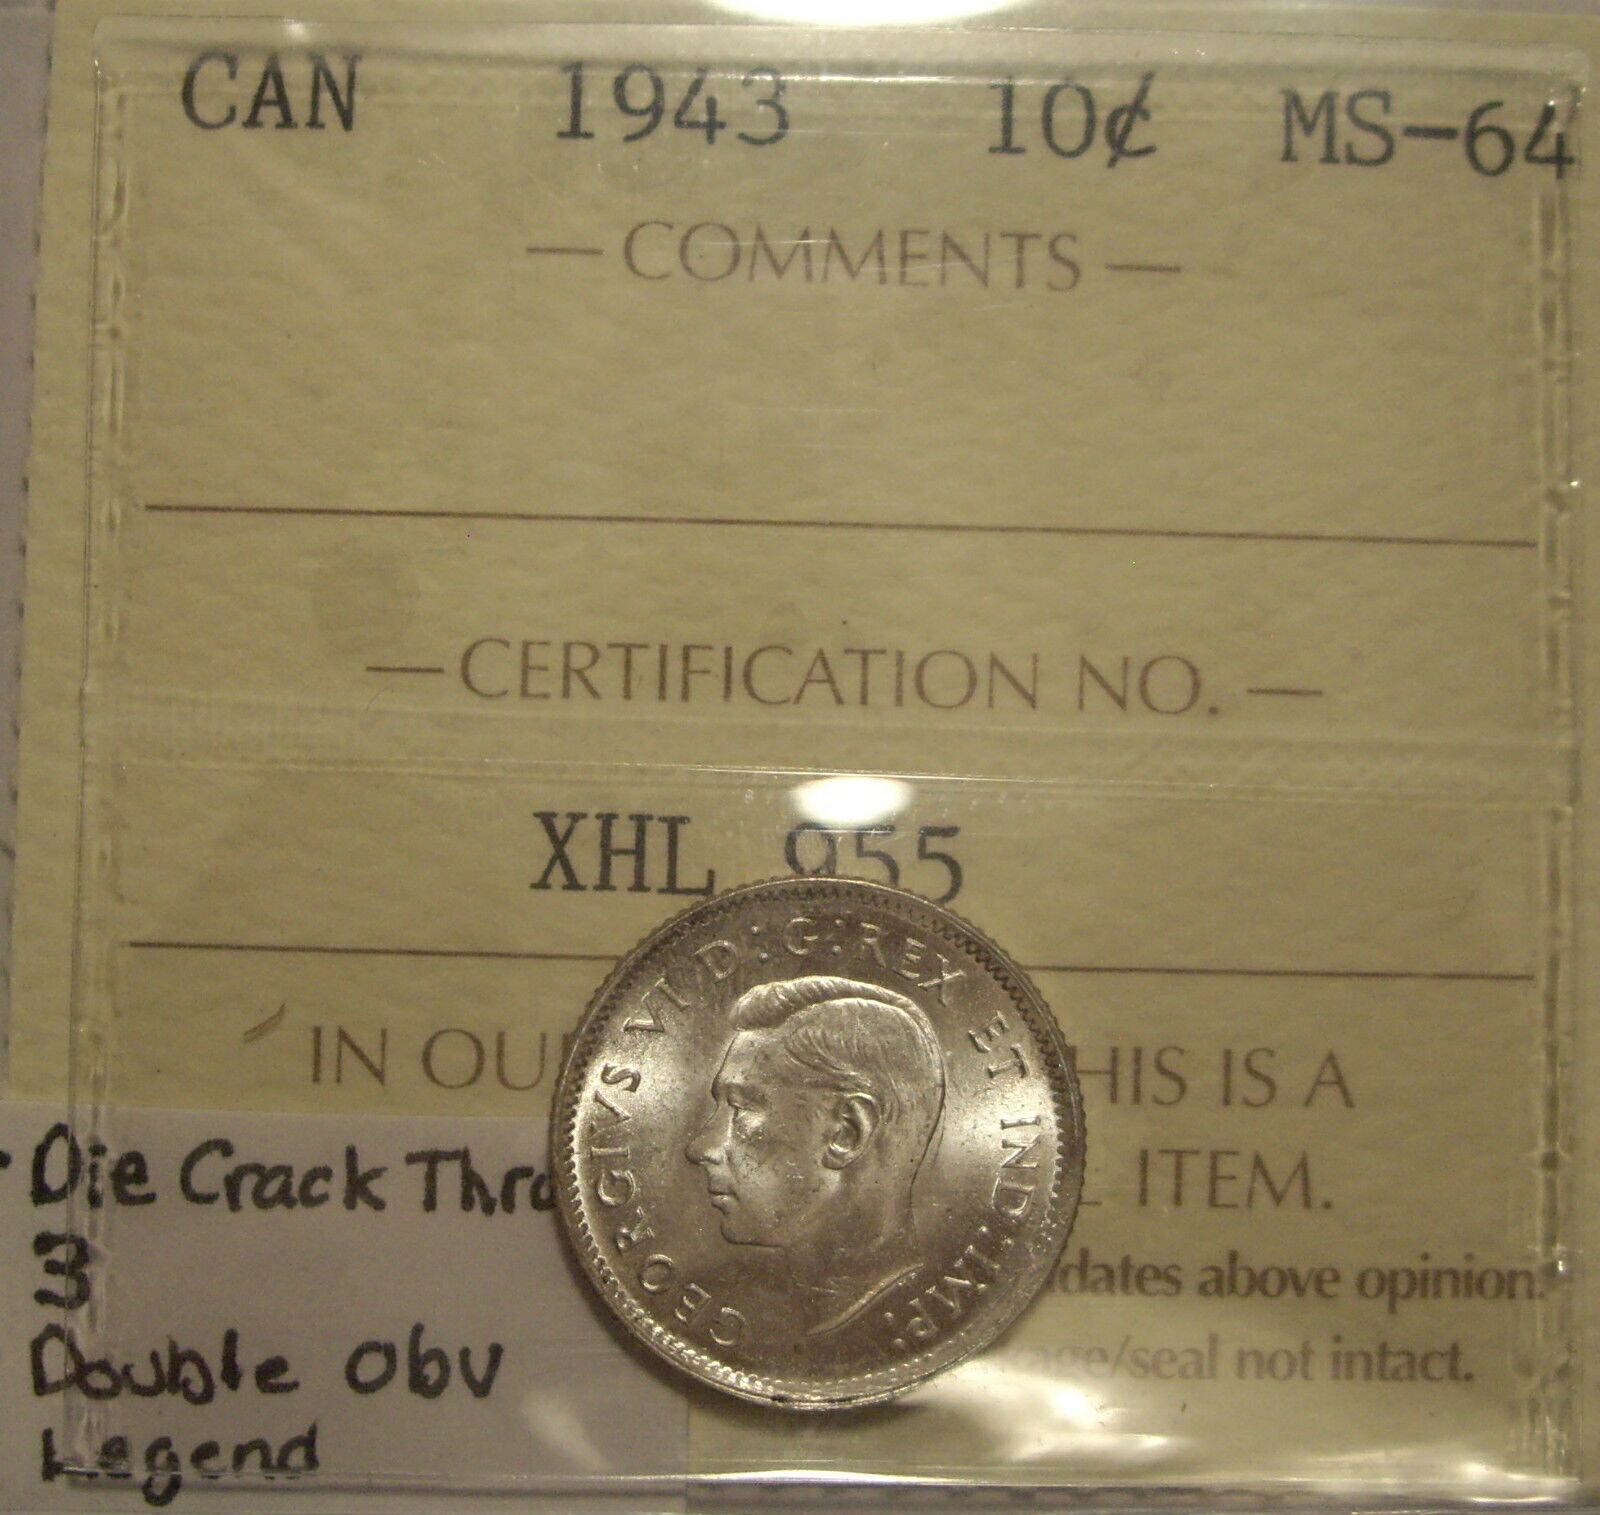 【極美品/品質保証書付】 アンティークコイン コイン 金貨 銀貨 [送料無料] George VI 1943 Die Cr; Double Obv Legend Silver Ten Cents - ICCS MS-64 (XHL 955)